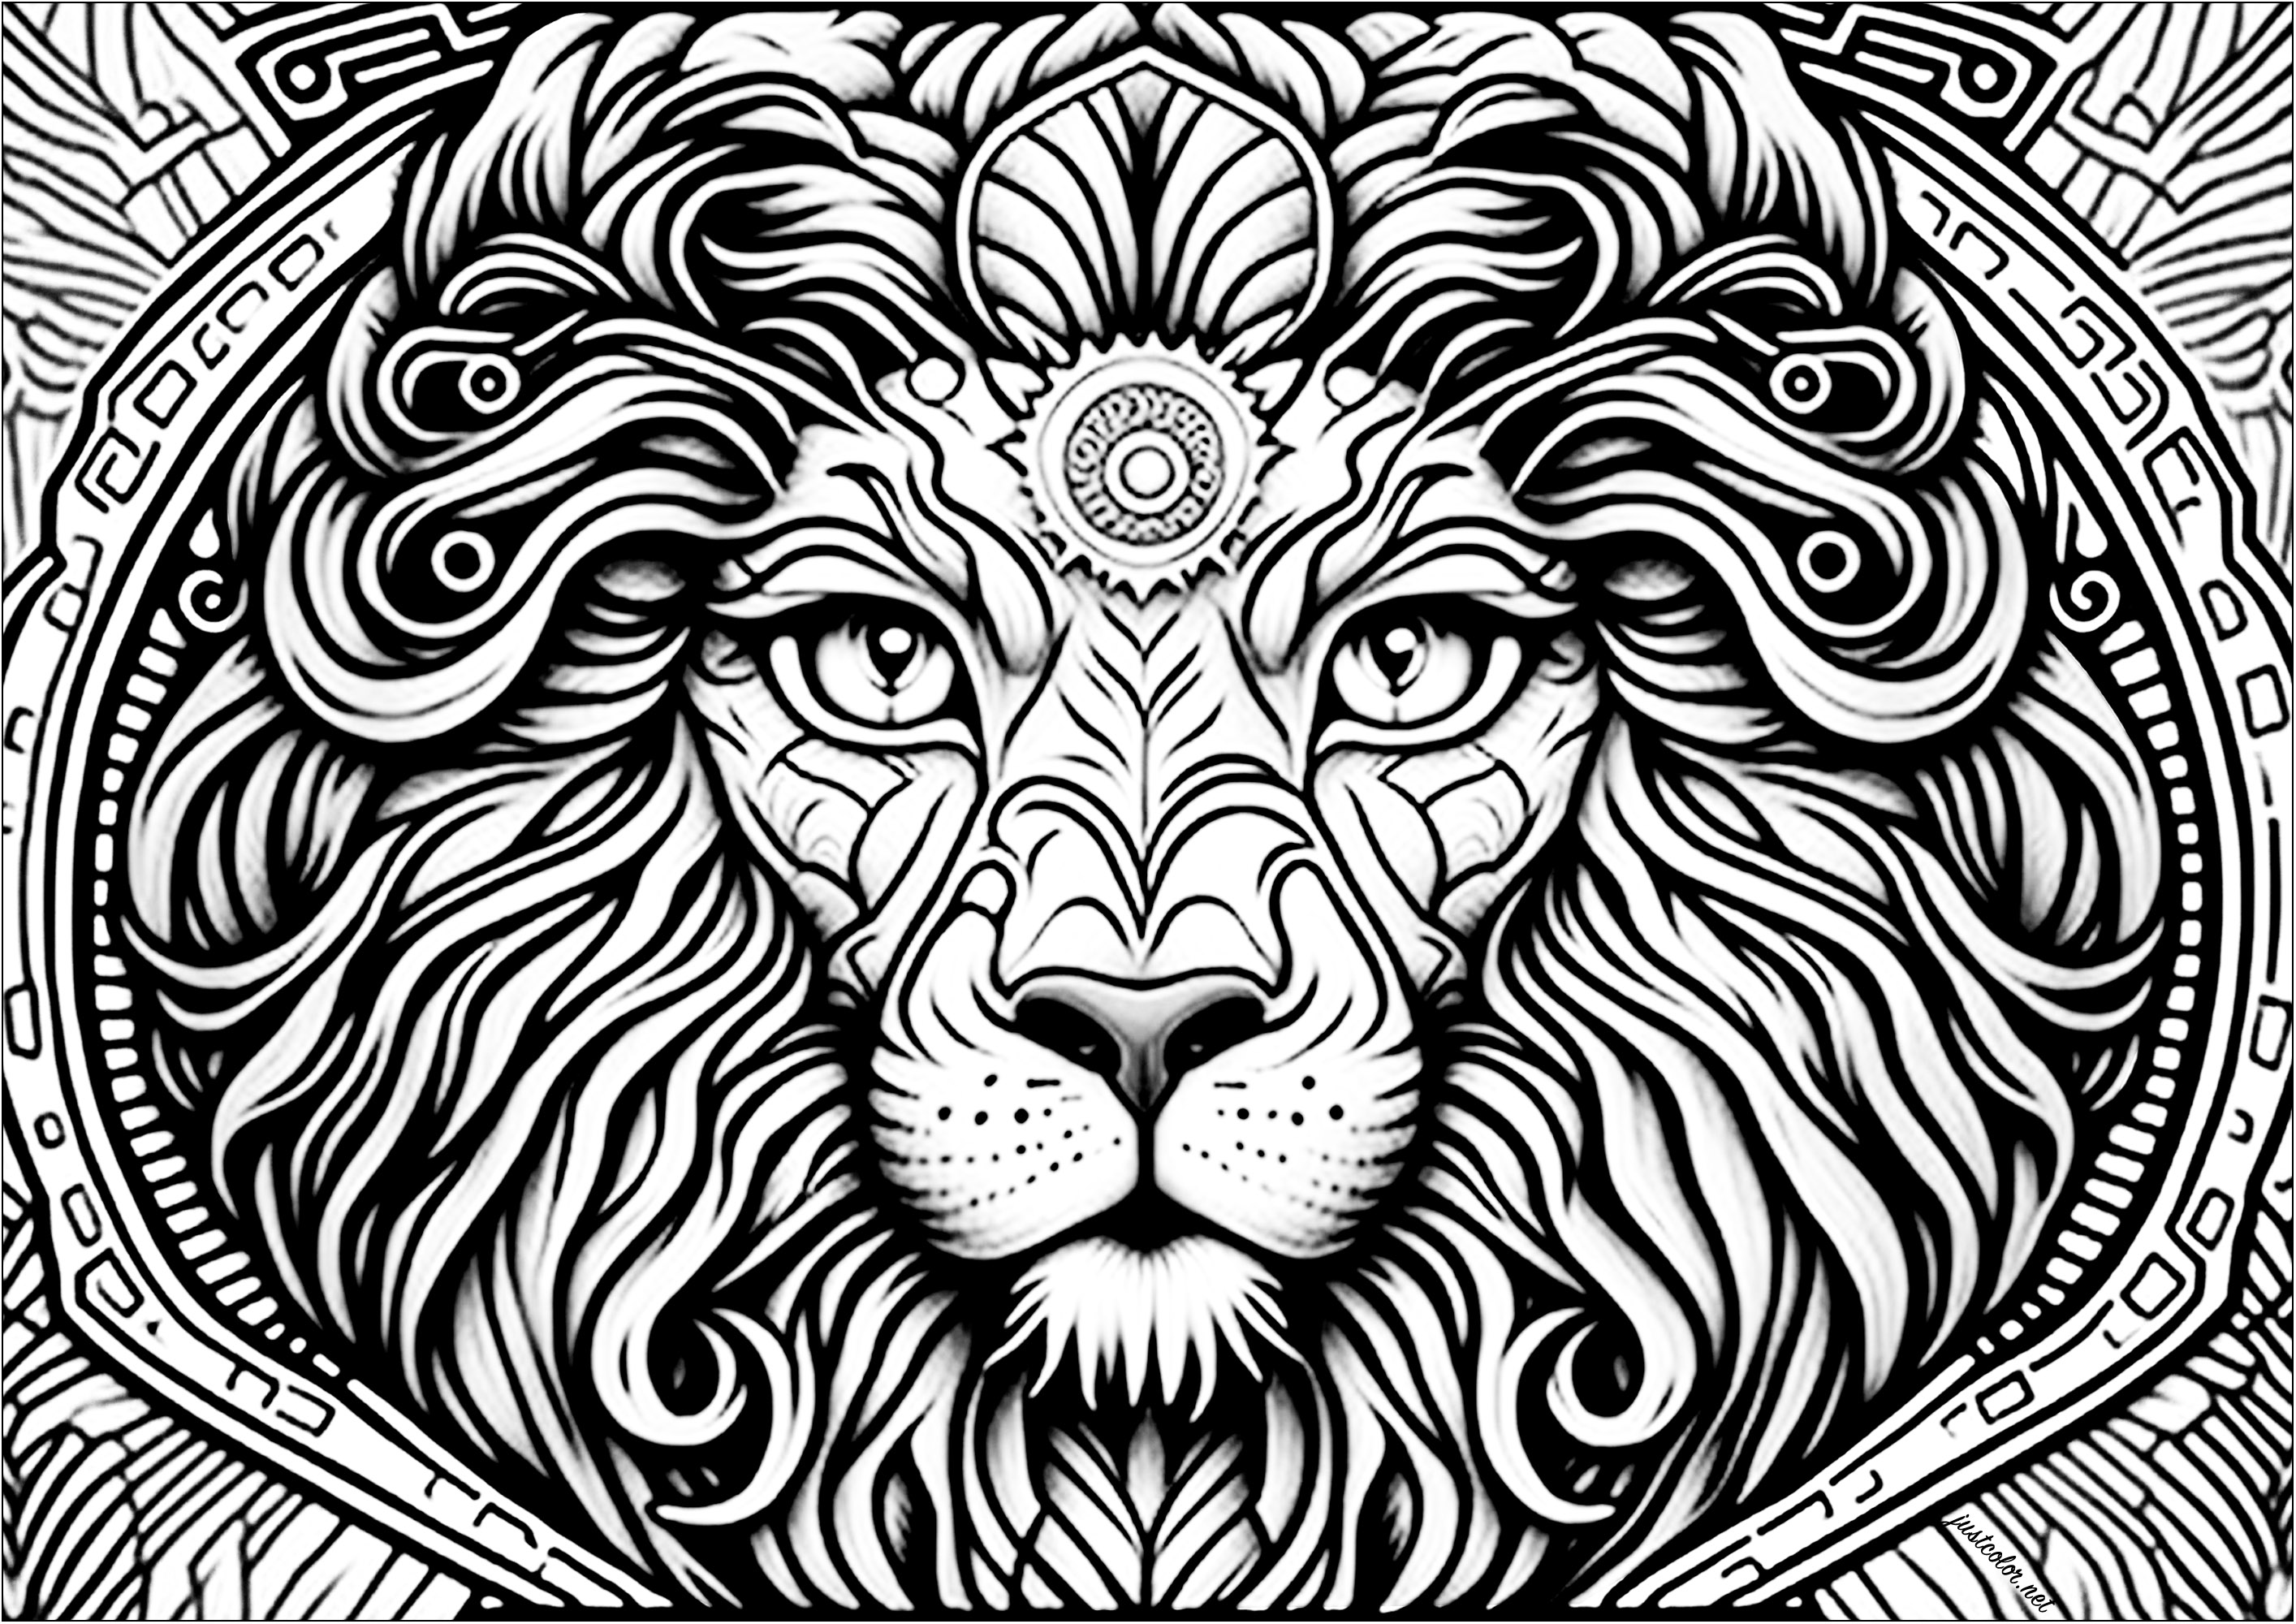 Tête de lion vue de face, avec nombreux détails. Ce magnifique coloriage représente une tête de lion vue de face, avec de nombreux détails.Les yeux sont grands ouverts et le regard est perçant. La crinière est fournie et ondulée, et se fond avec les détails abstraits de l'arrière plan.